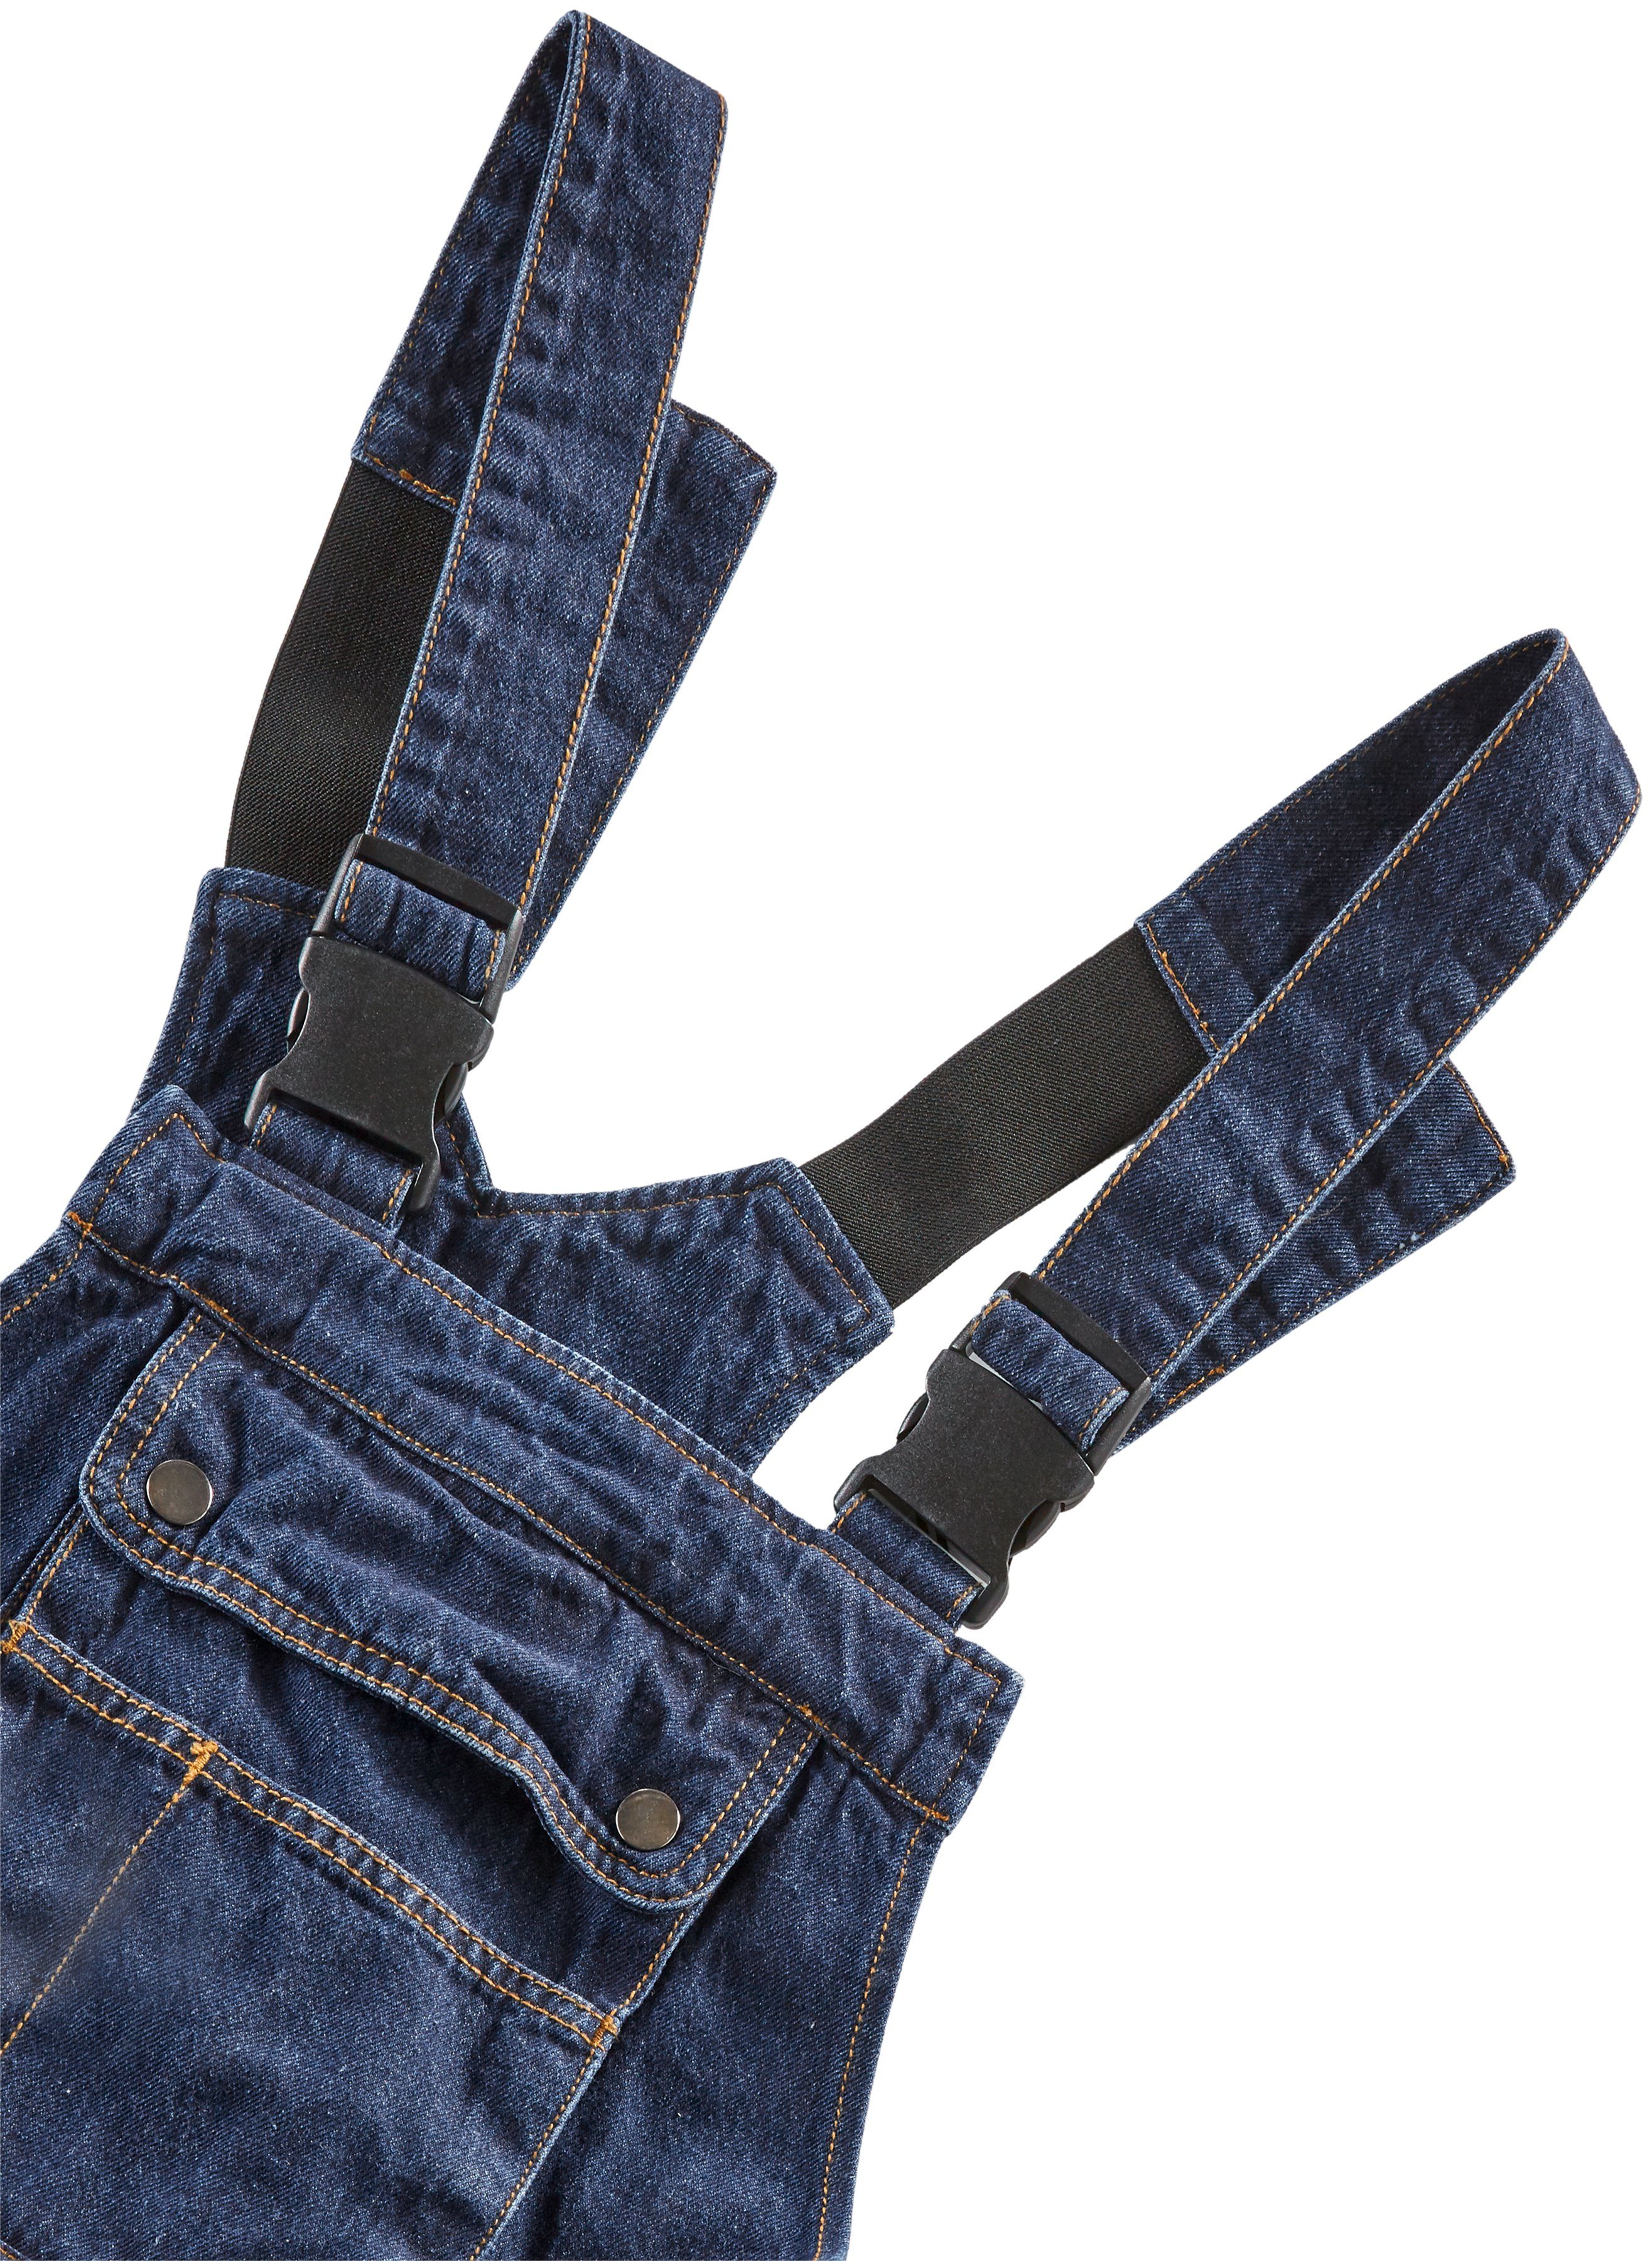 Northern Country Latzhose Worker Jeans Bund, Baumwolle, robuster (aus mit und fit) dehnbarem Jeansstoff, comfort 11 100% langlebig Taschen, strapazierfähig